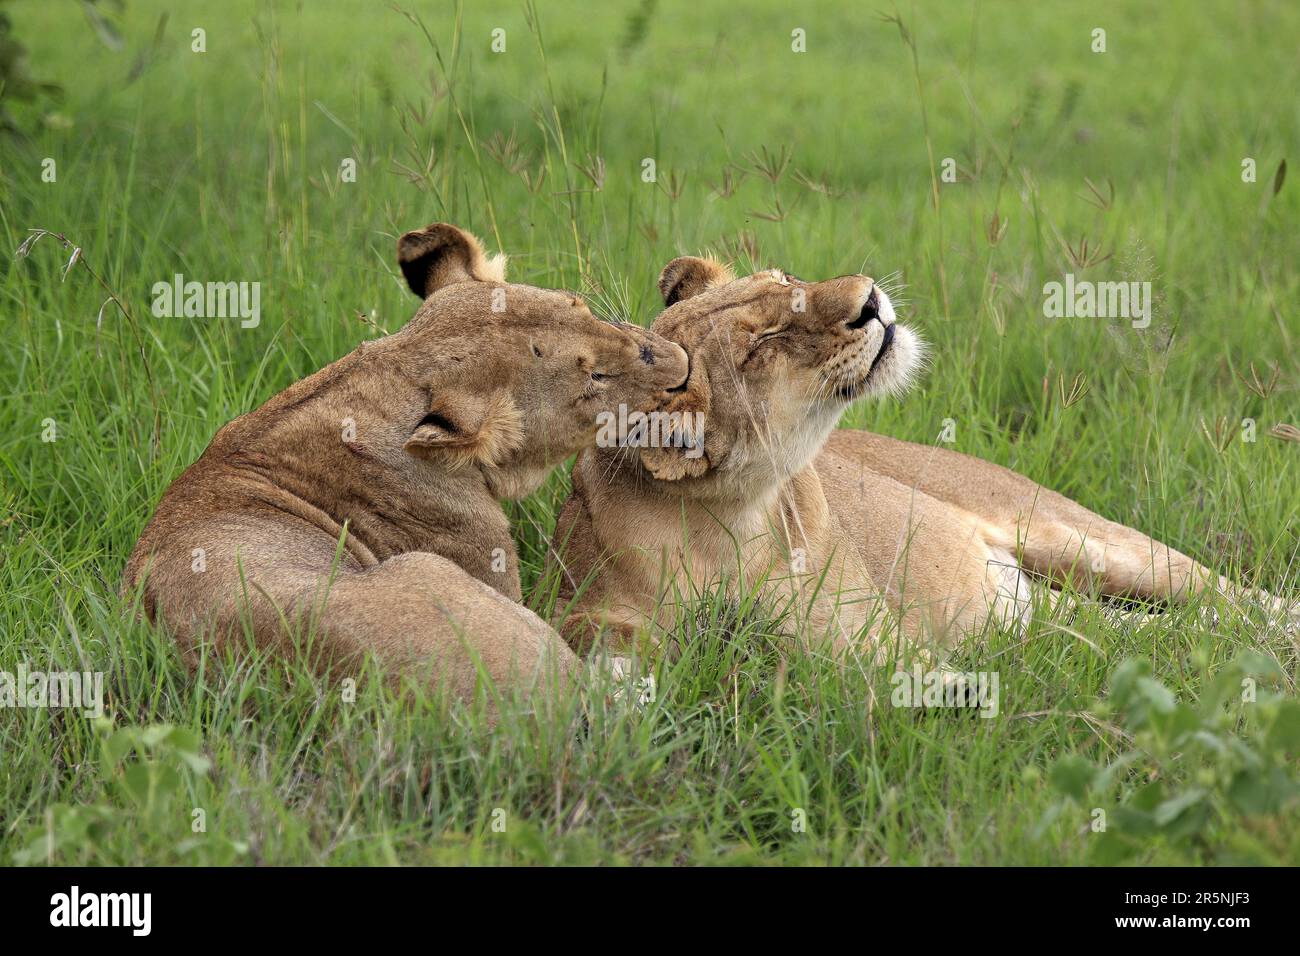 Lions d'Afrique (Panthera leo), lionnes, réserve de gibier Sabi Sabi, parc national Kruger, lion de nian d'Afrique du Sud Banque D'Images